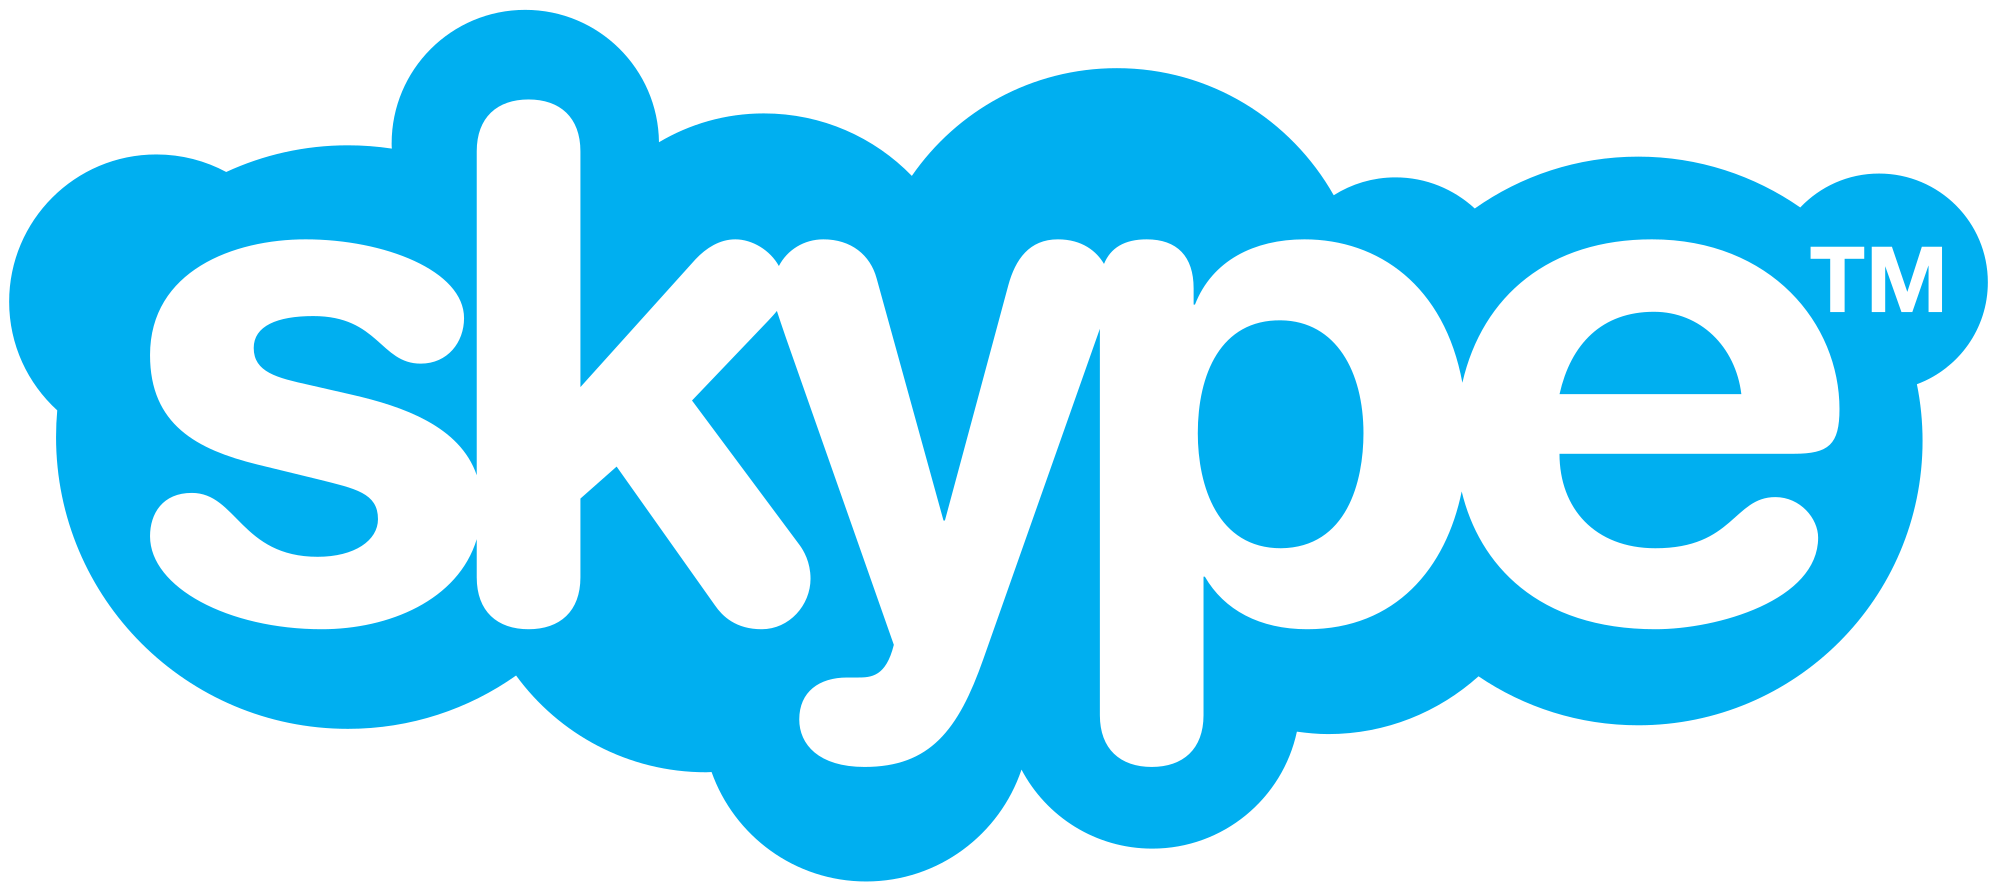 Official Skype Logo - File:Skype logo.svg - Wikimedia Commons